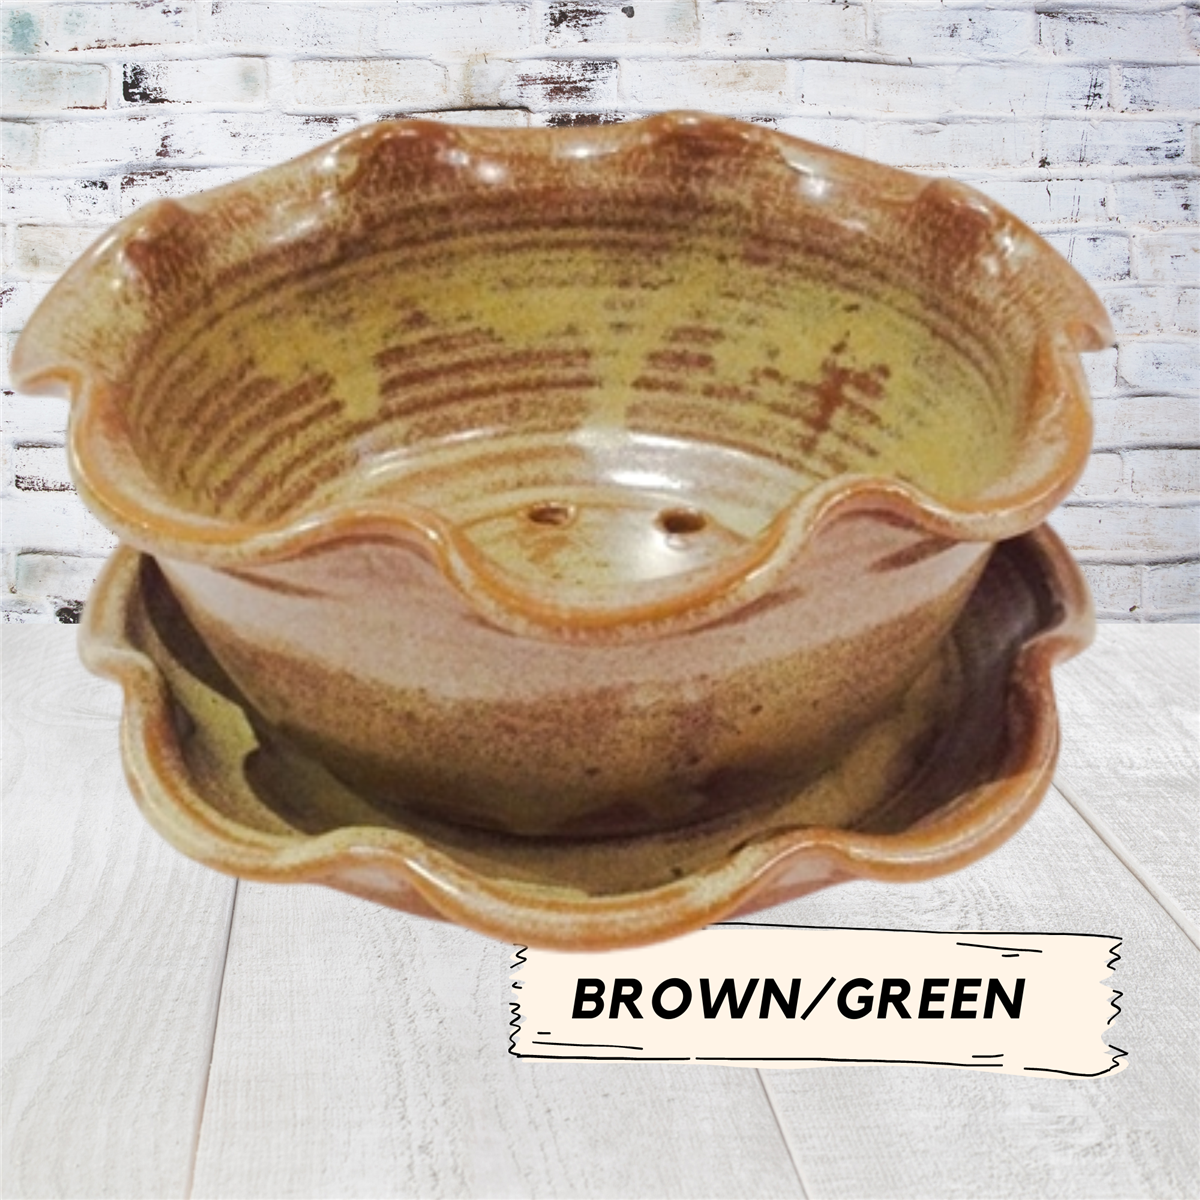 Colander strainer for draining blueberries pottery ceramic bowl